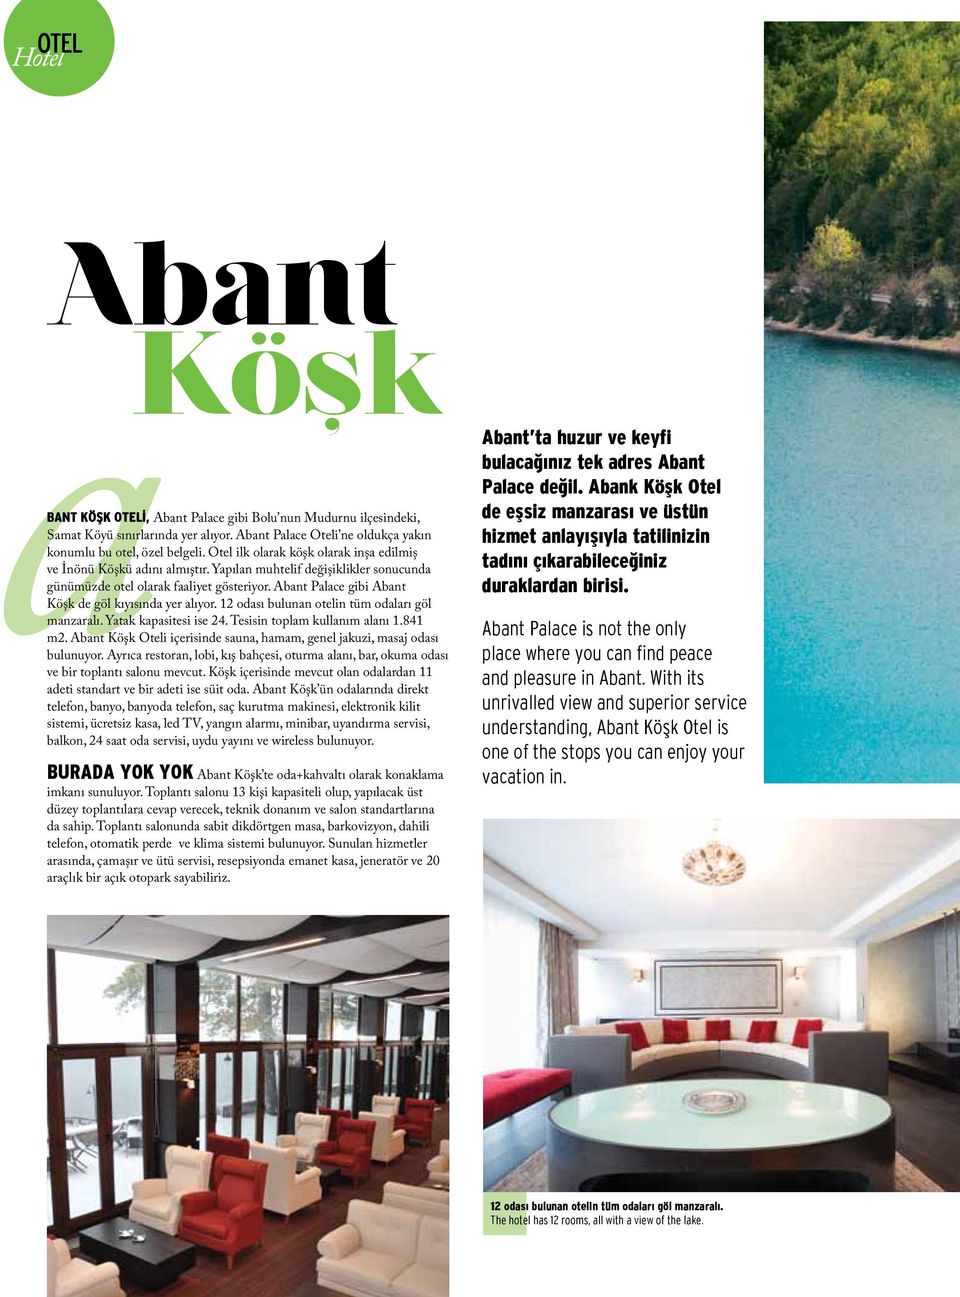 Abant Palace gibi Abant Köşk de göl kıyısında yer alıyor. 12 odası bulunan otelin tüm odaları göl manzaralı. Yatak kapasitesi ise 24. Tesisin toplam kullanım alanı 1.841 m2.